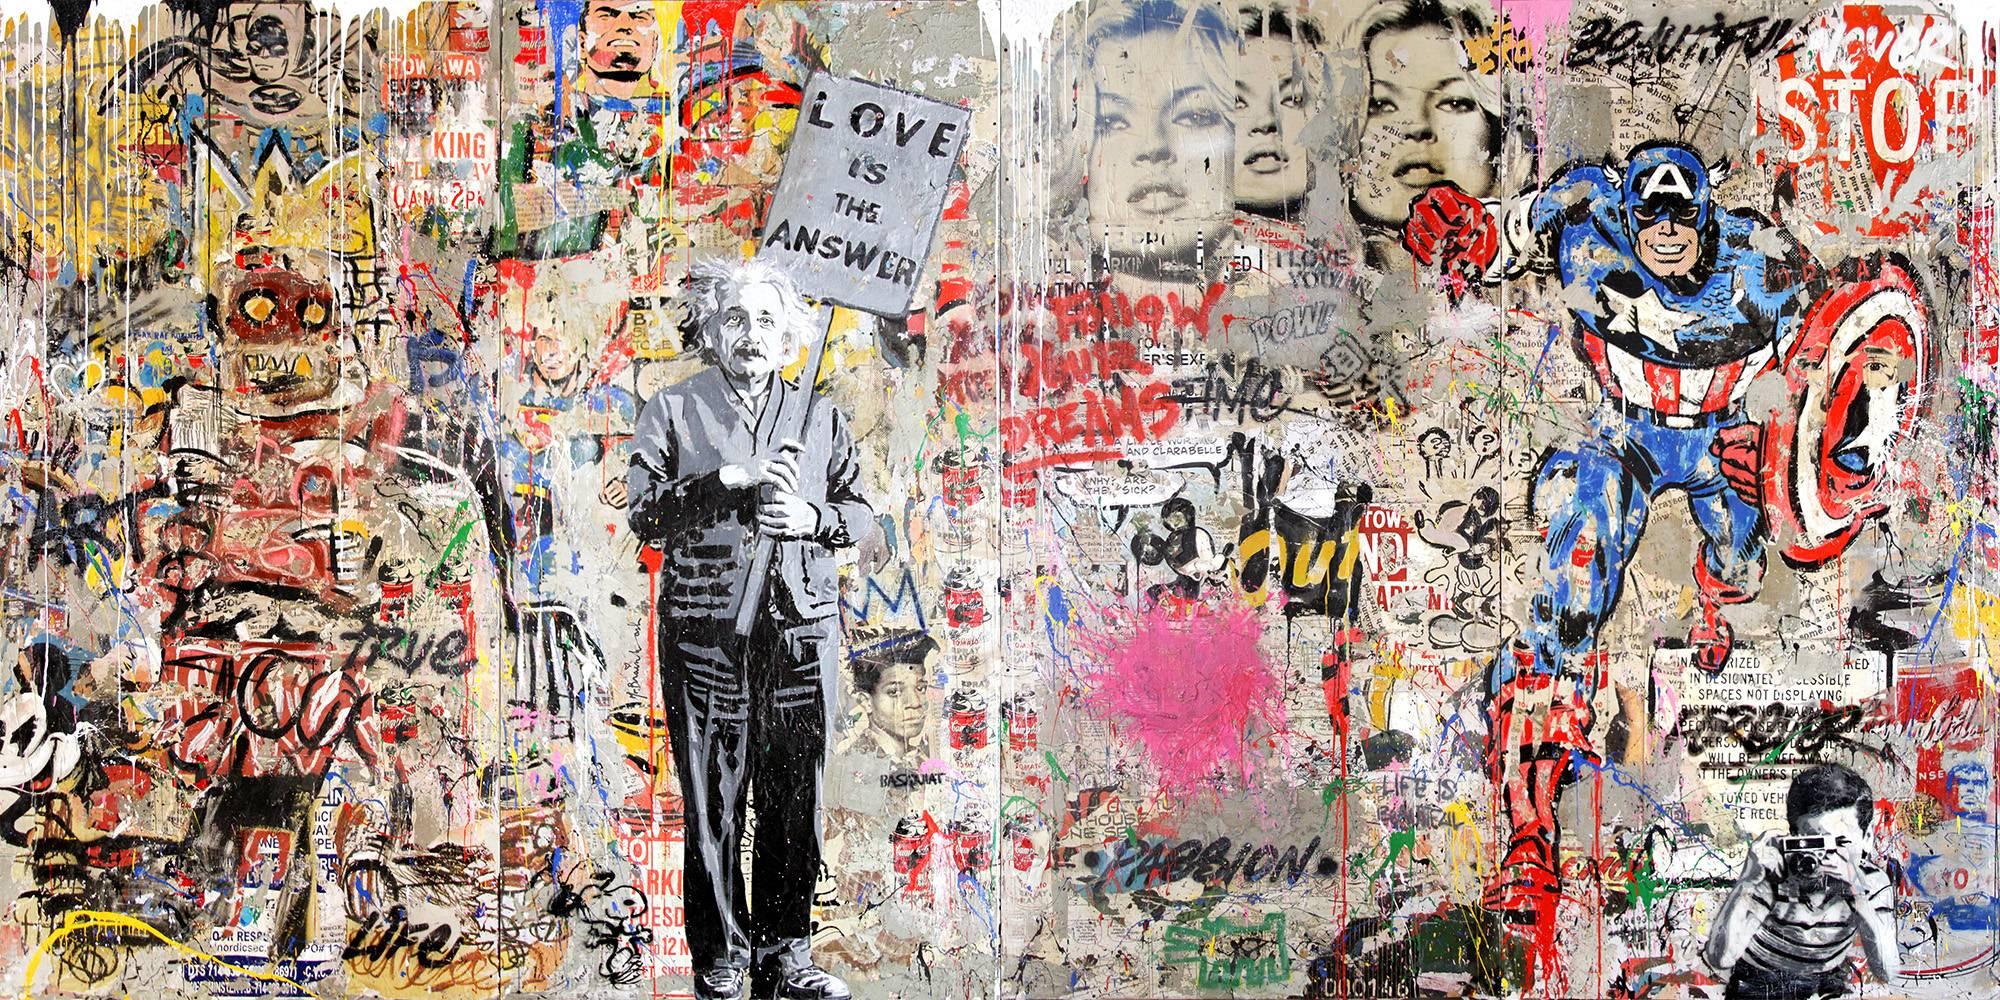 Einstein Mural - Mixed Media Art by Mr. Brainwash